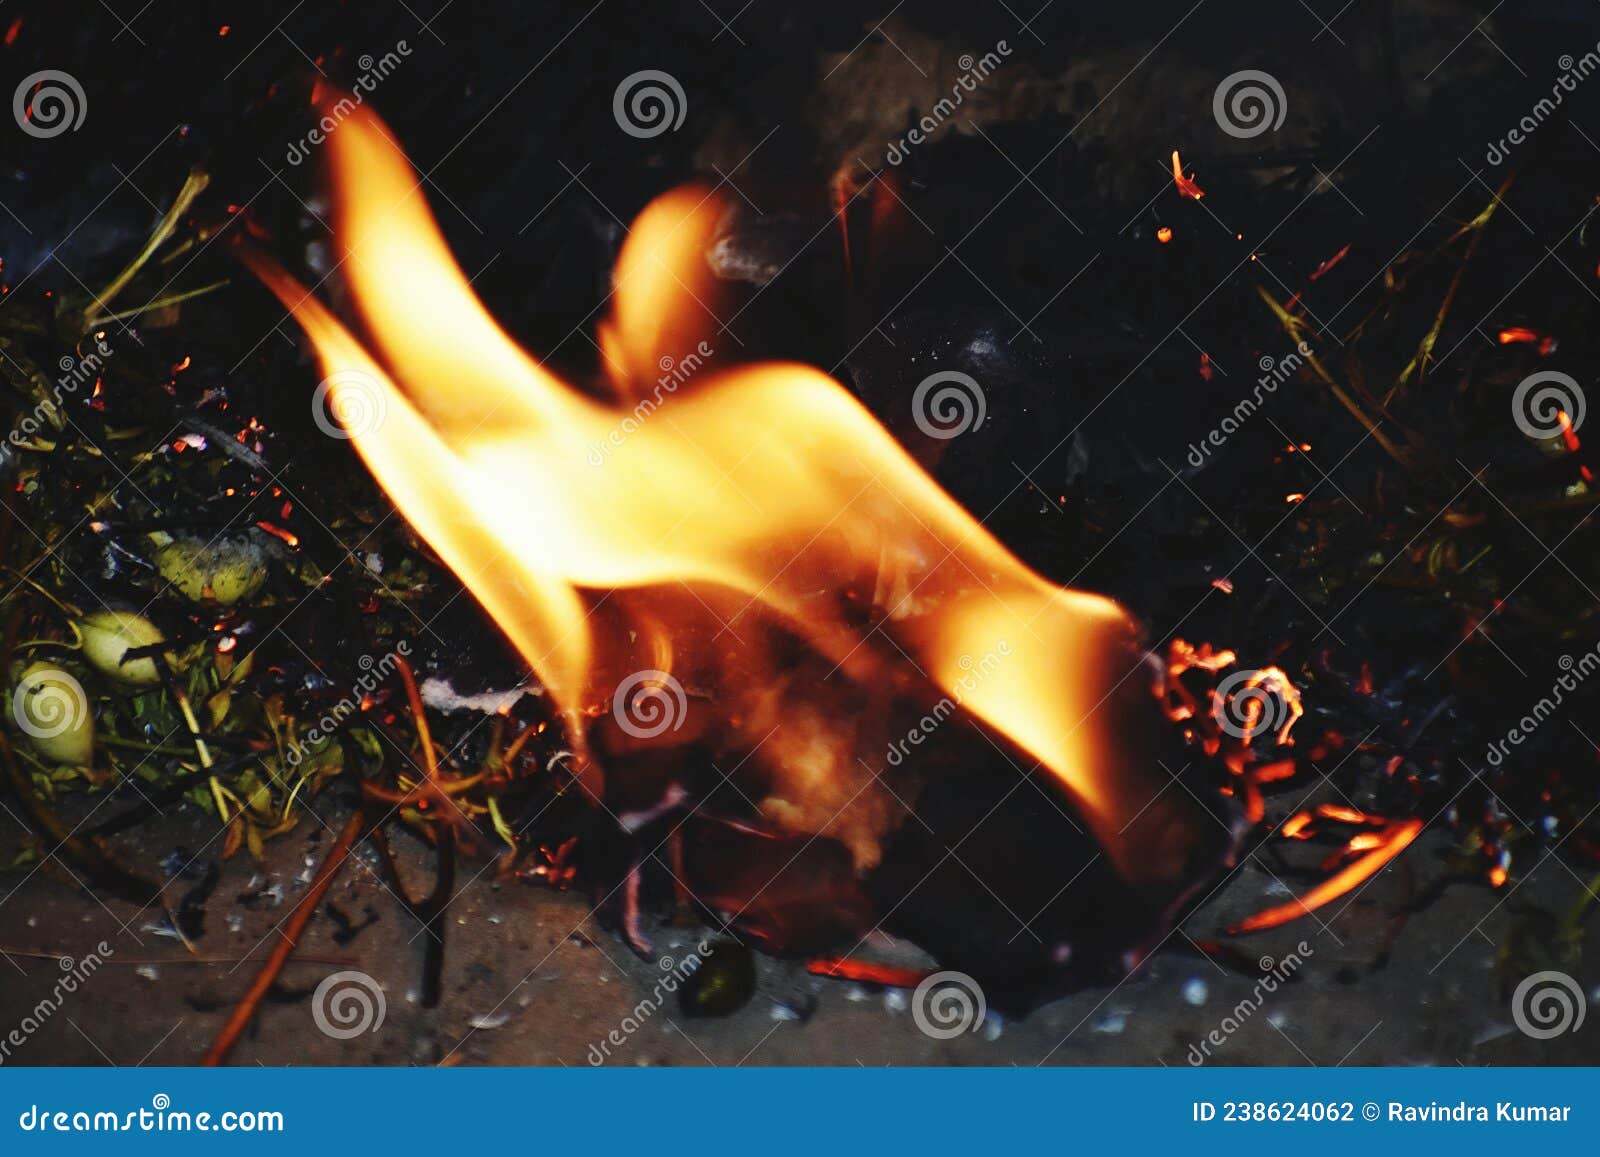 Vuur is Een Chemische Reactie Die Licht En Warmte Afgeeft. Stock Foto ...